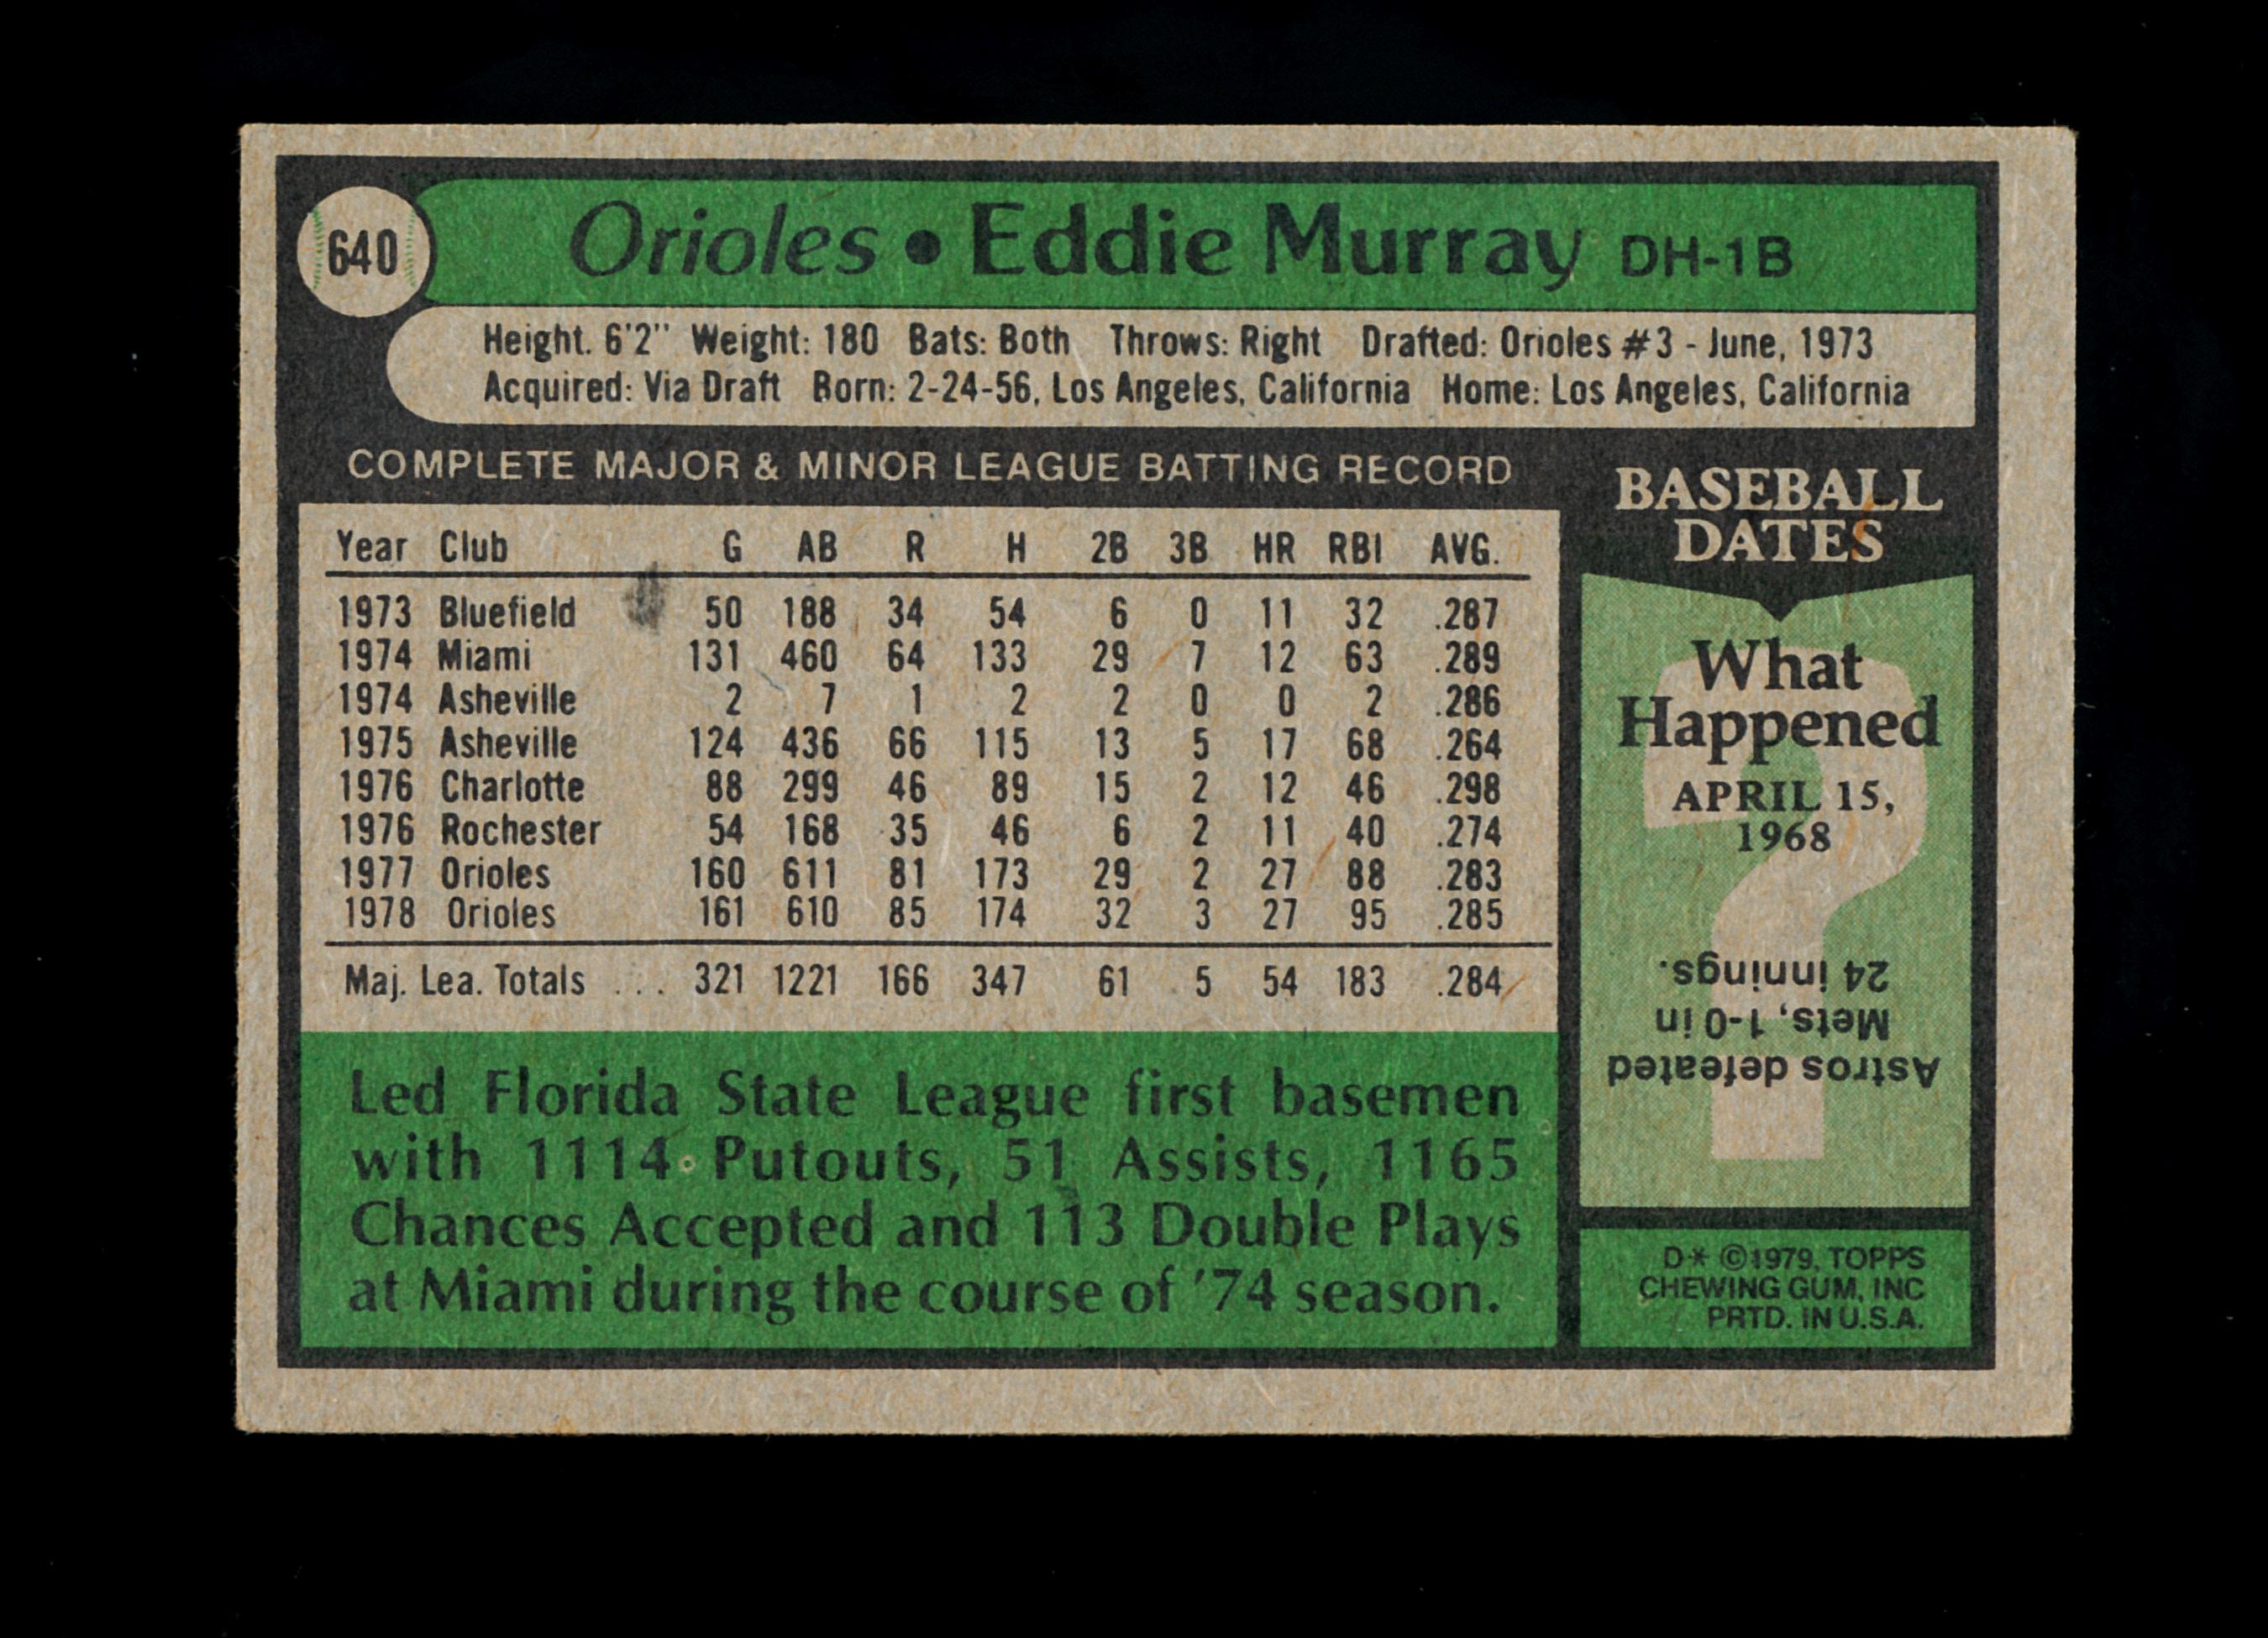 1979 Topps Baseball Card #640 Hall of Famer Eddie Murray Baltimore Orioles